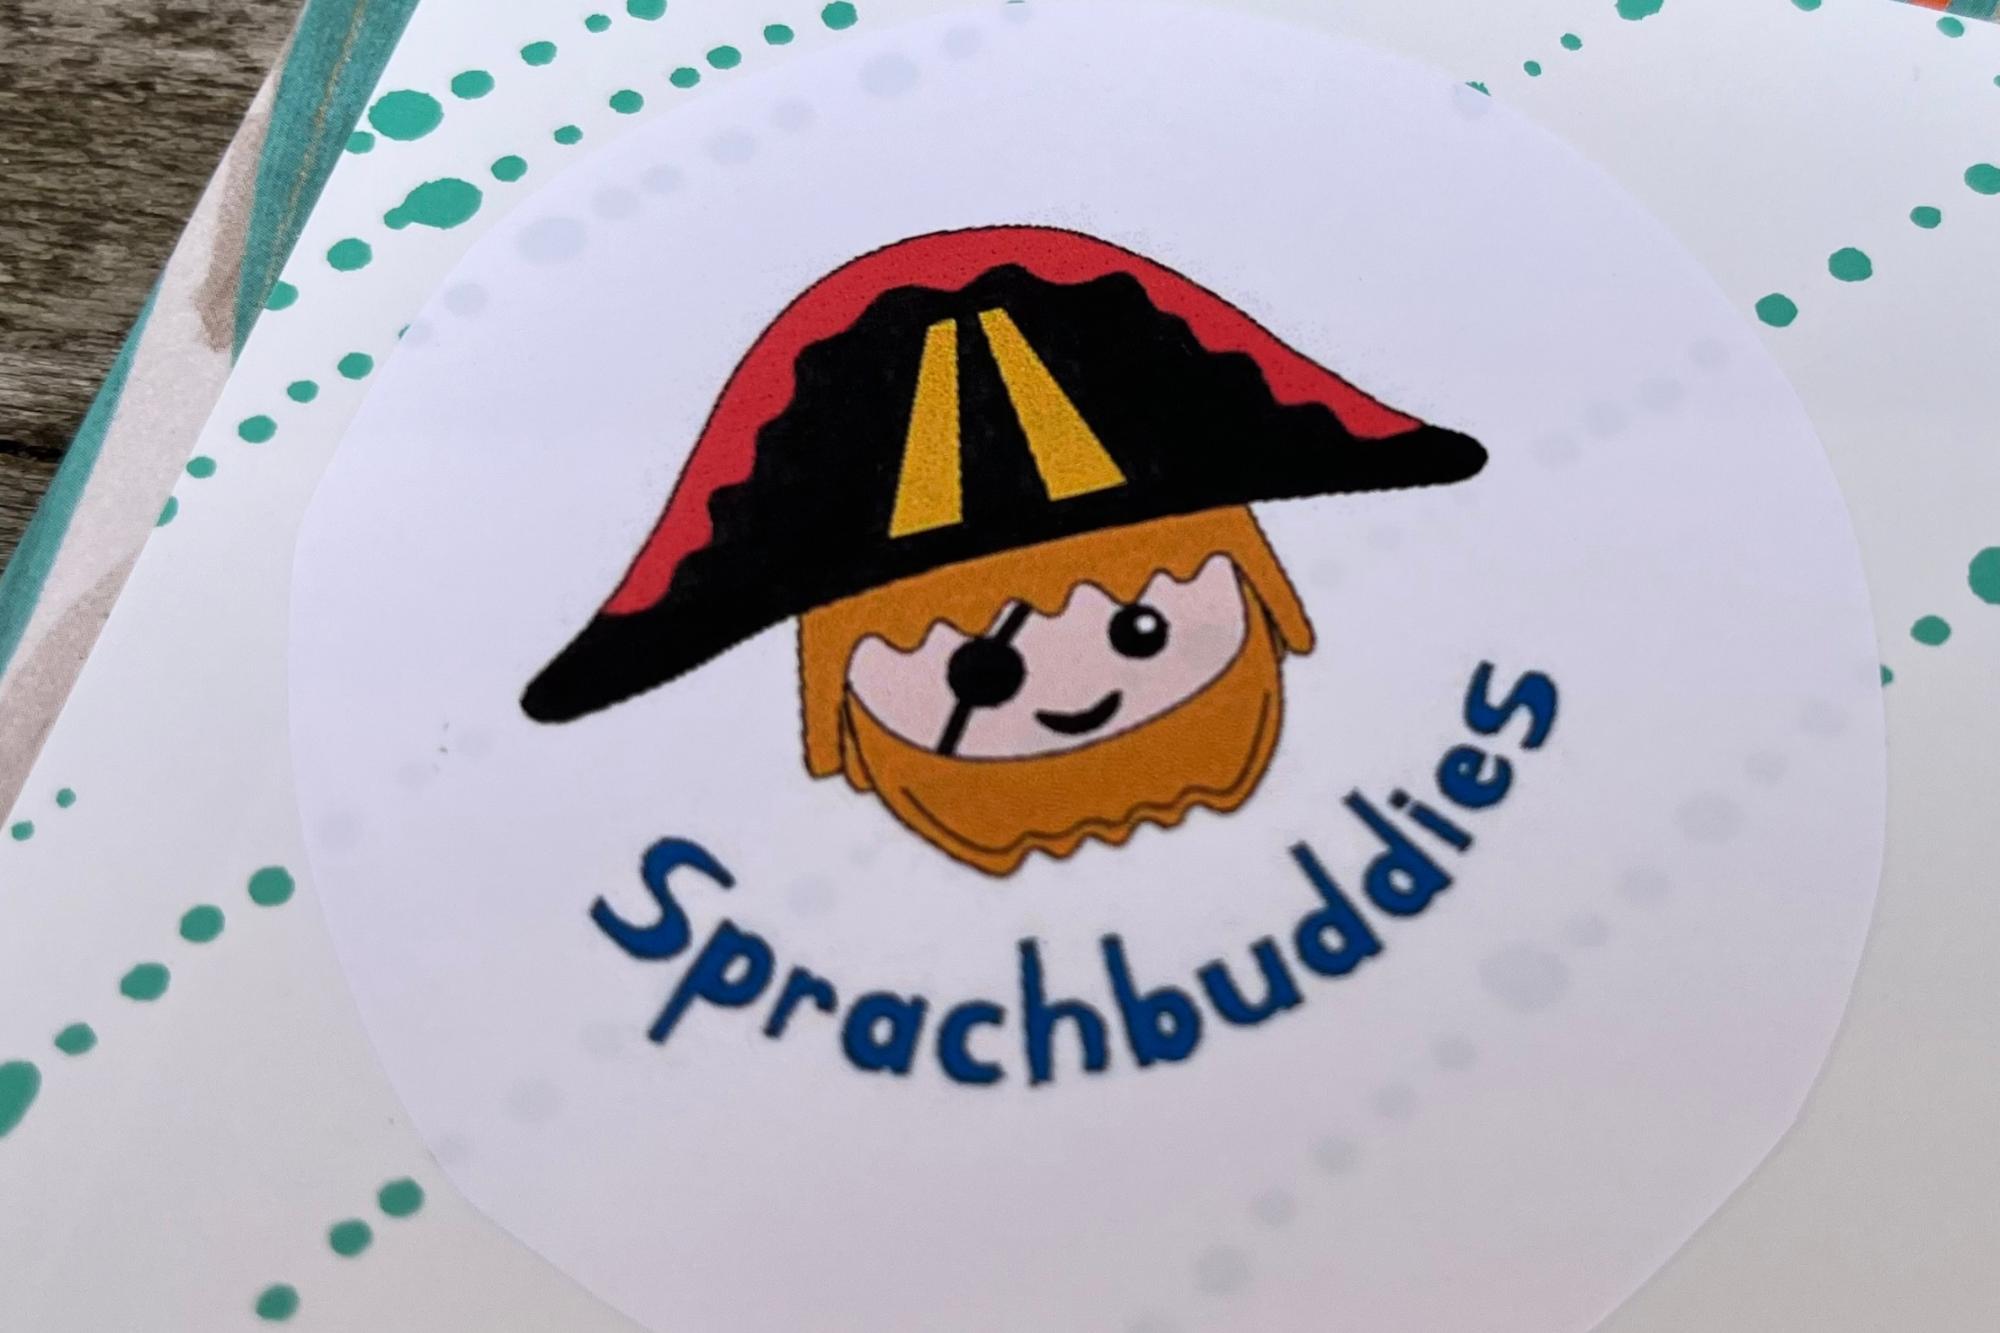 Sprachbuddies